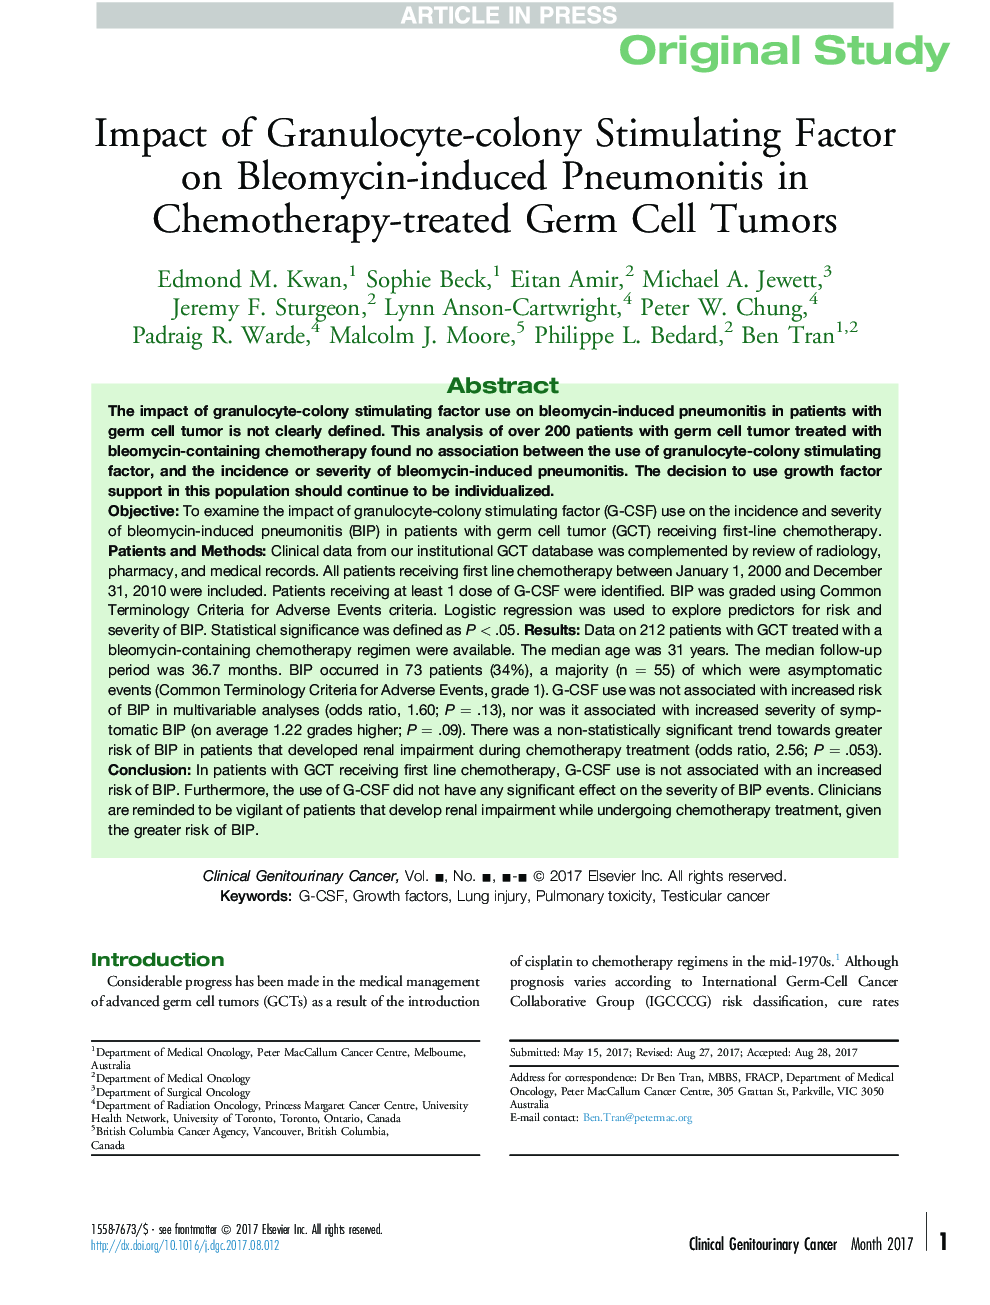 اثرات عوامل تحریک کننده گرانولوسیت-کلونی در بروز پنومونیت ناشی از بلومویسین در تومورهای سلول های زایای تحت شیمیدرمانی 